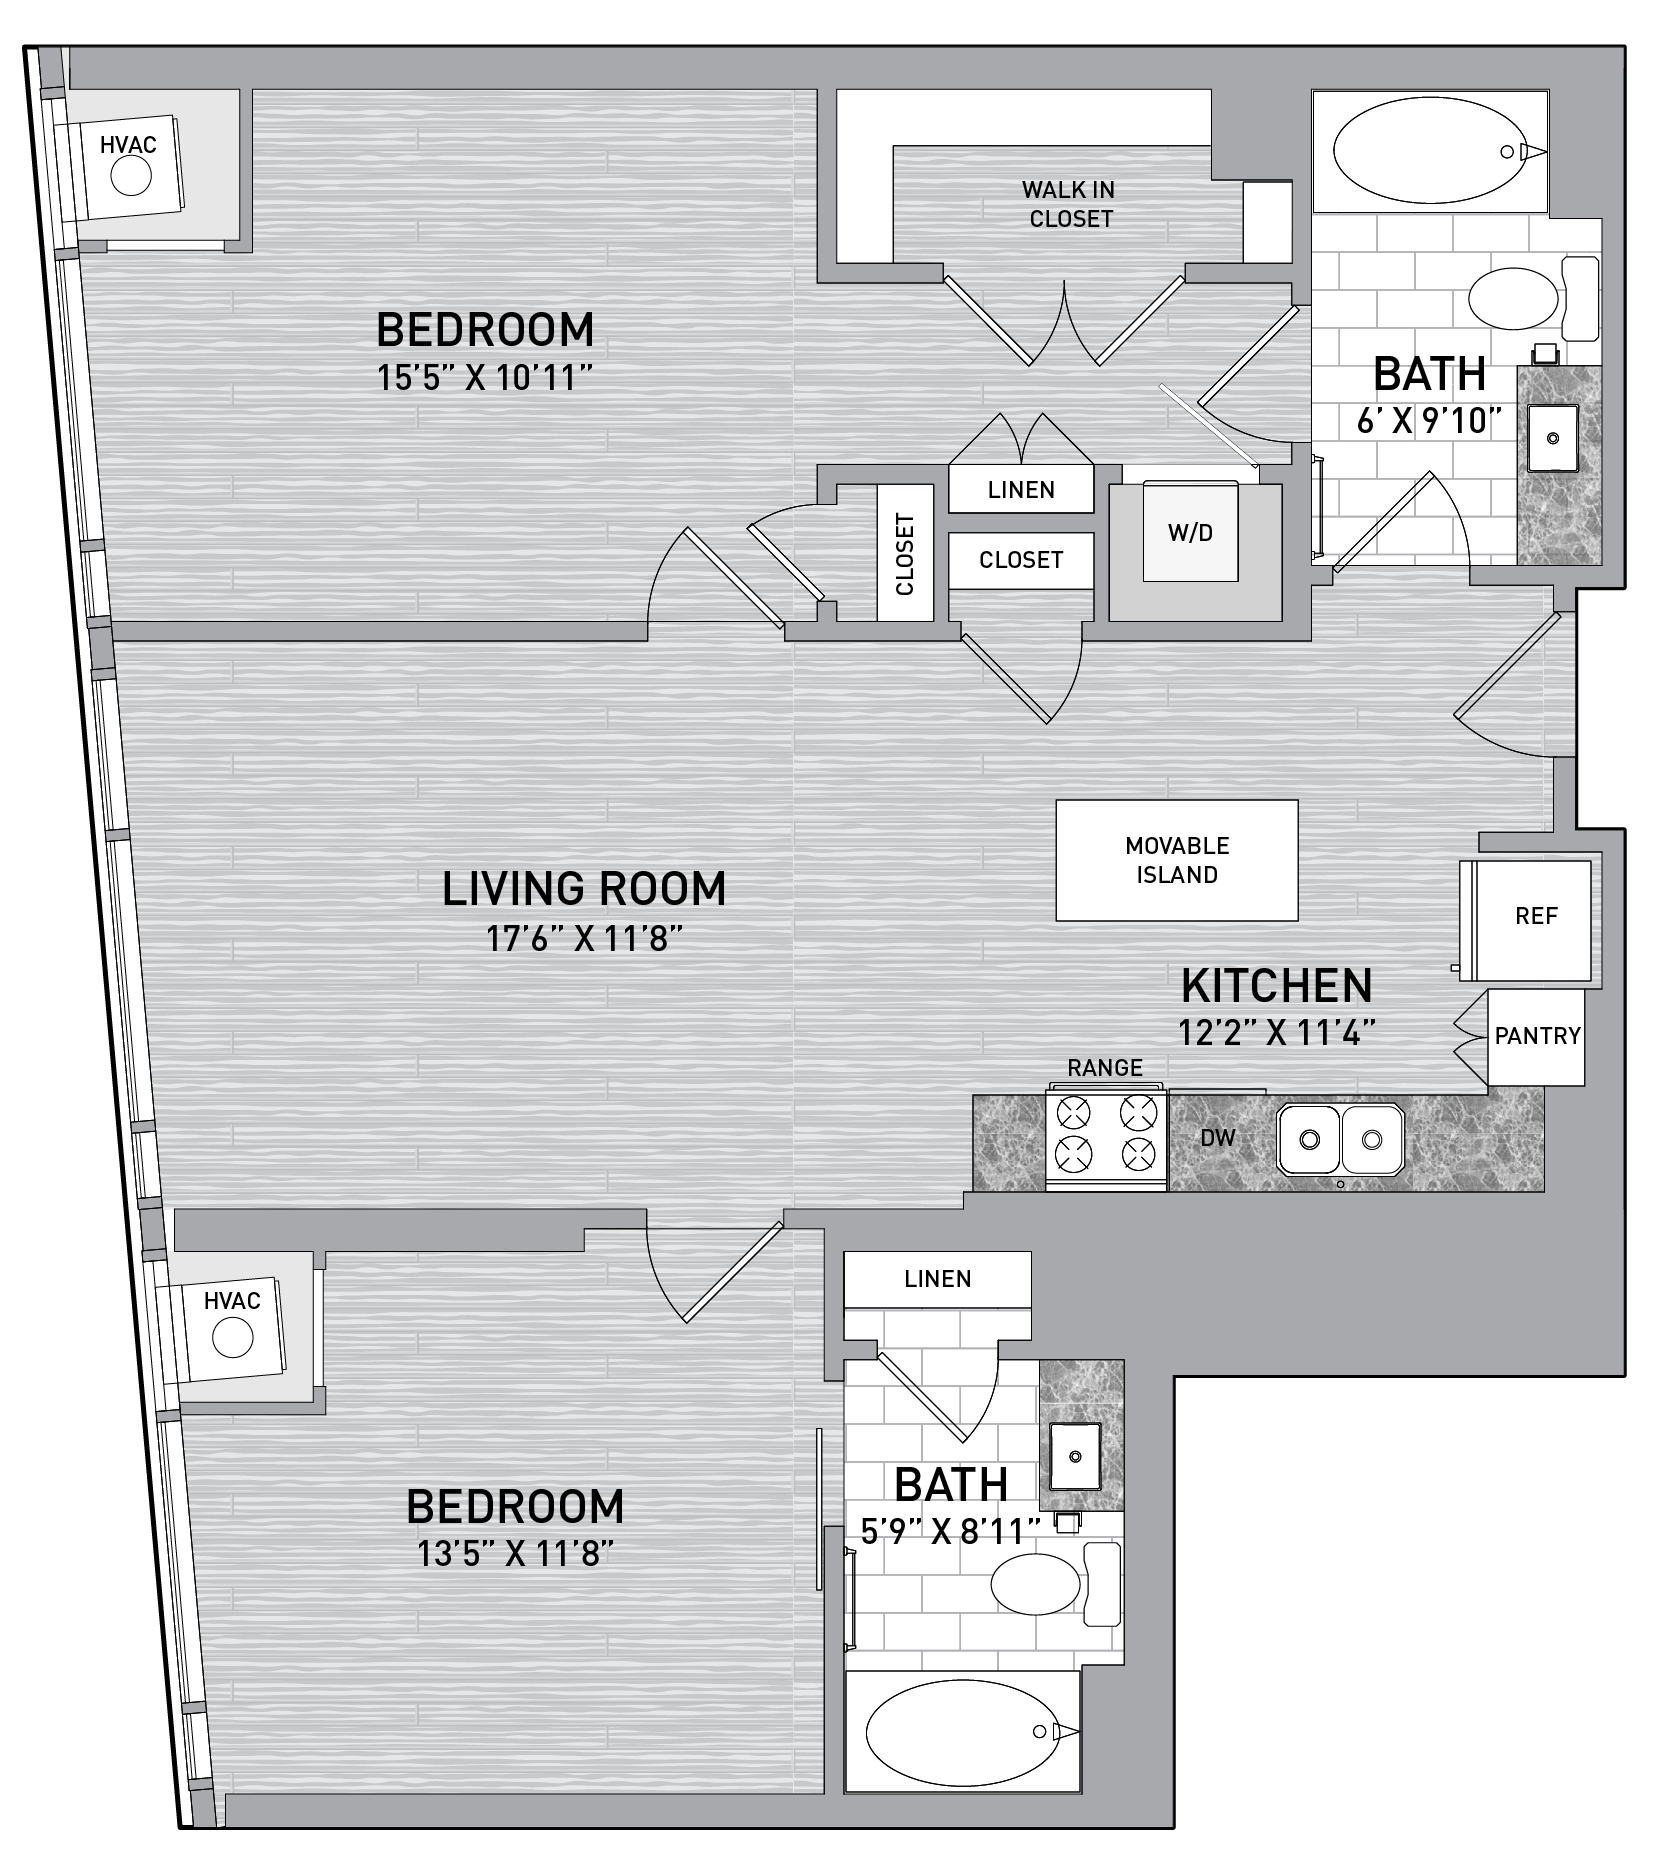 floorplan image of unit id 0304